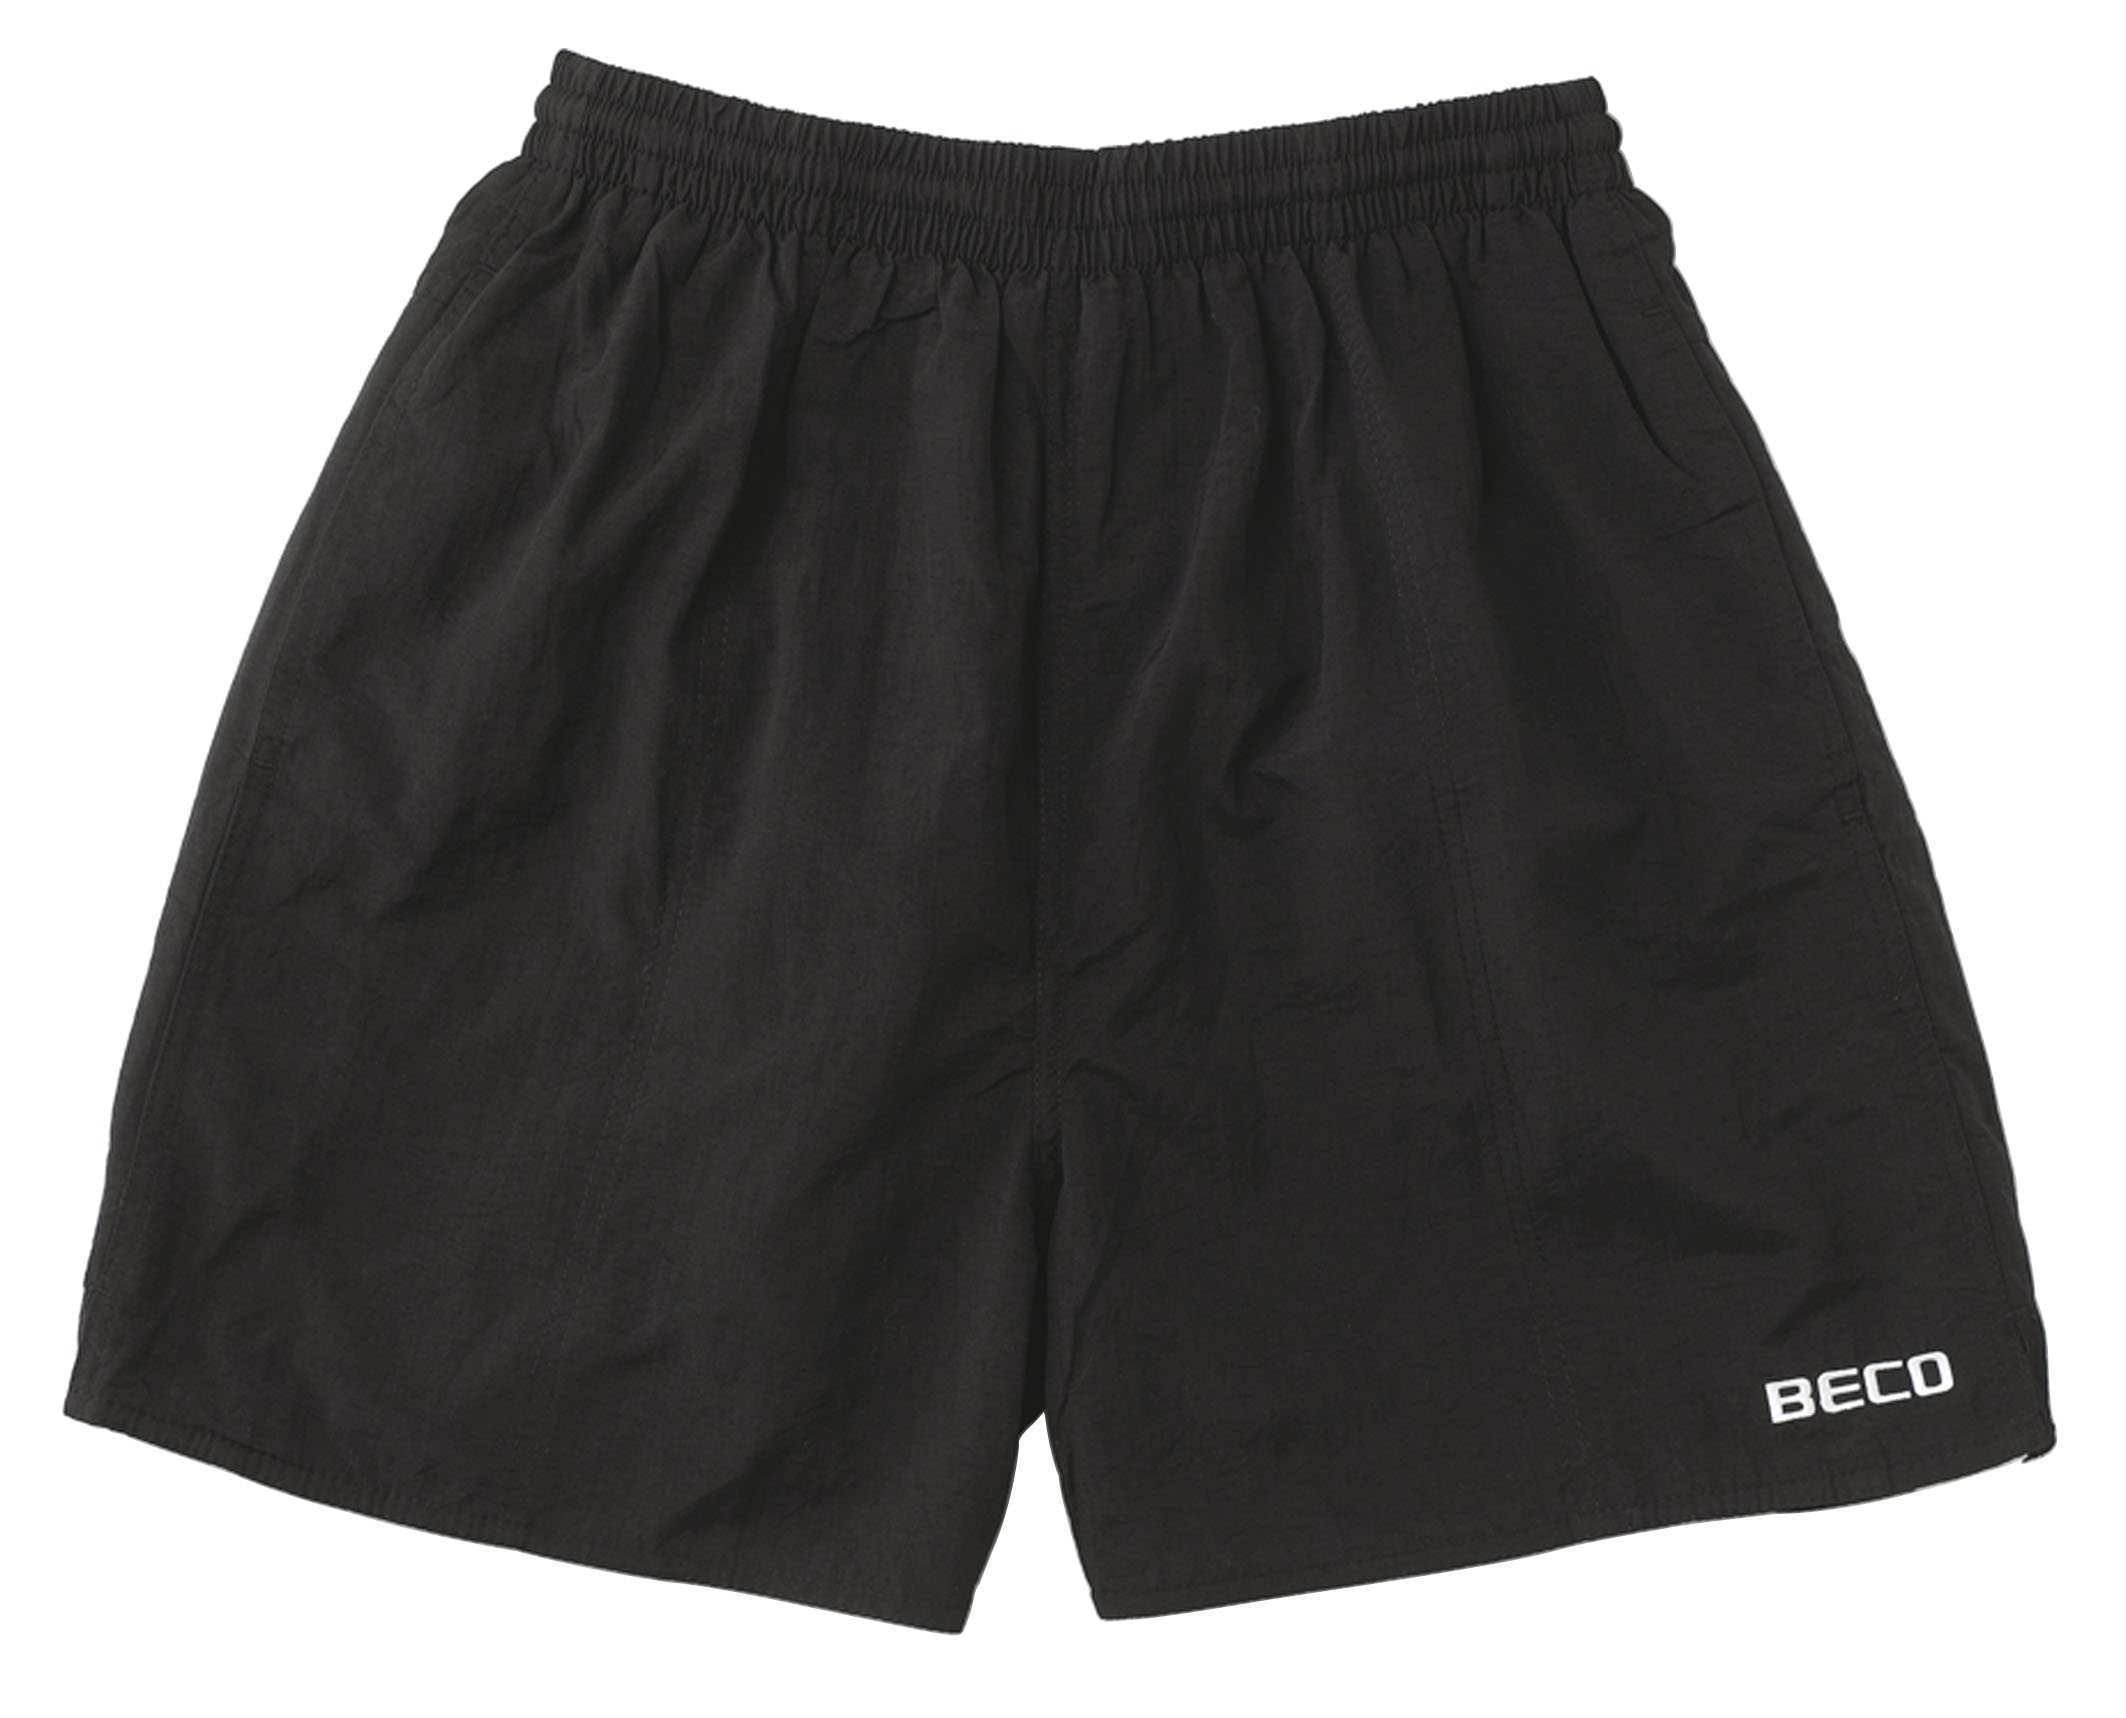 Beco Beco Herren Schwimmkleidung Shorts, schwarz, XL